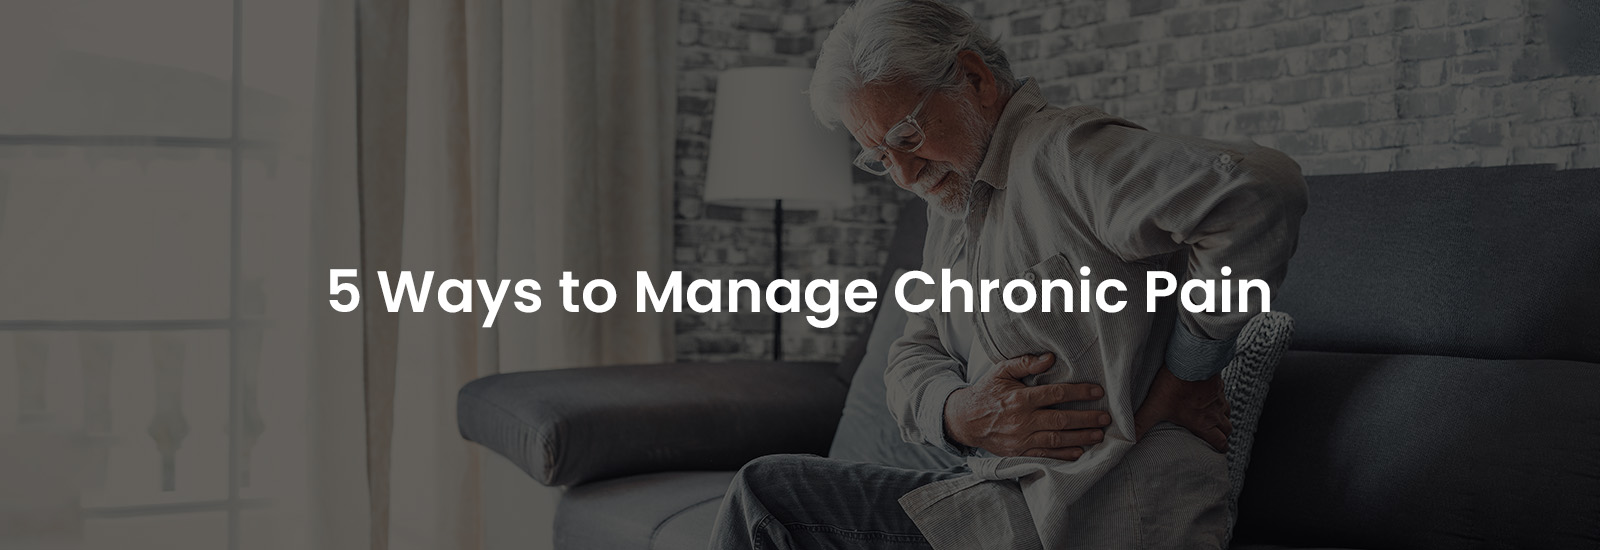 5 Ways to Manage Chronic Pain | Banner Image